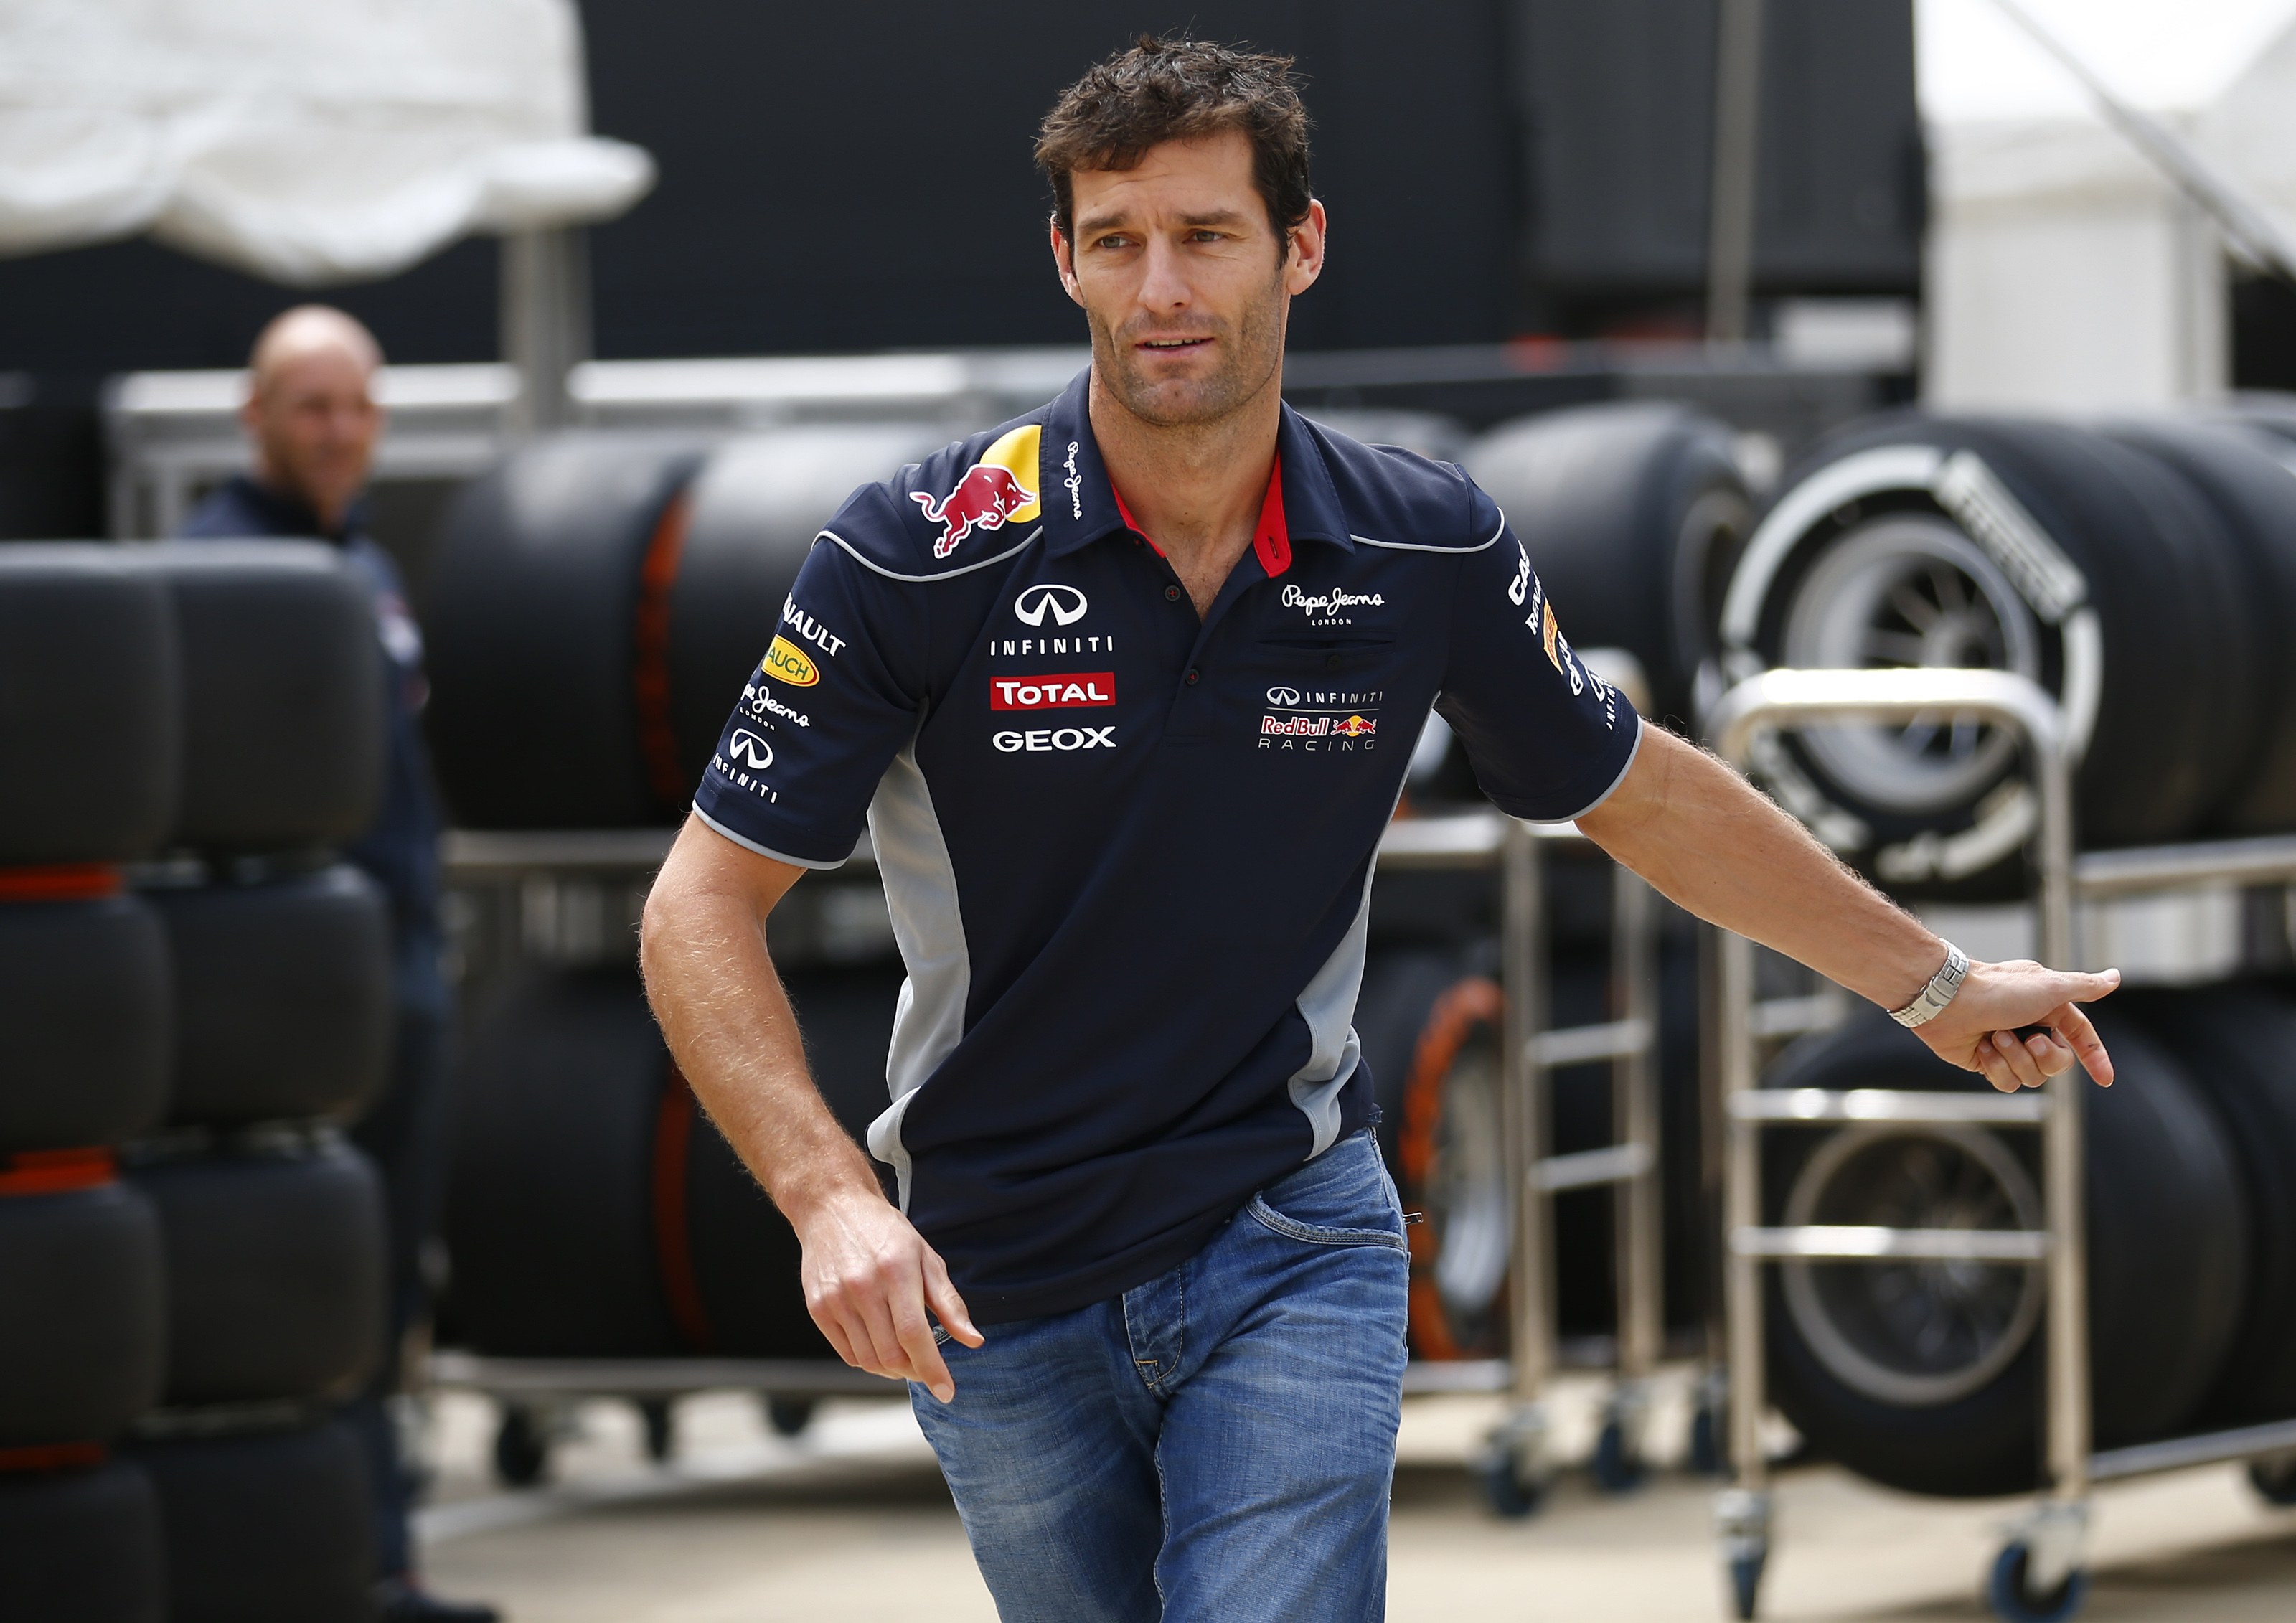 Τελευταία σεζόν στην F1 για τον Mark Webber